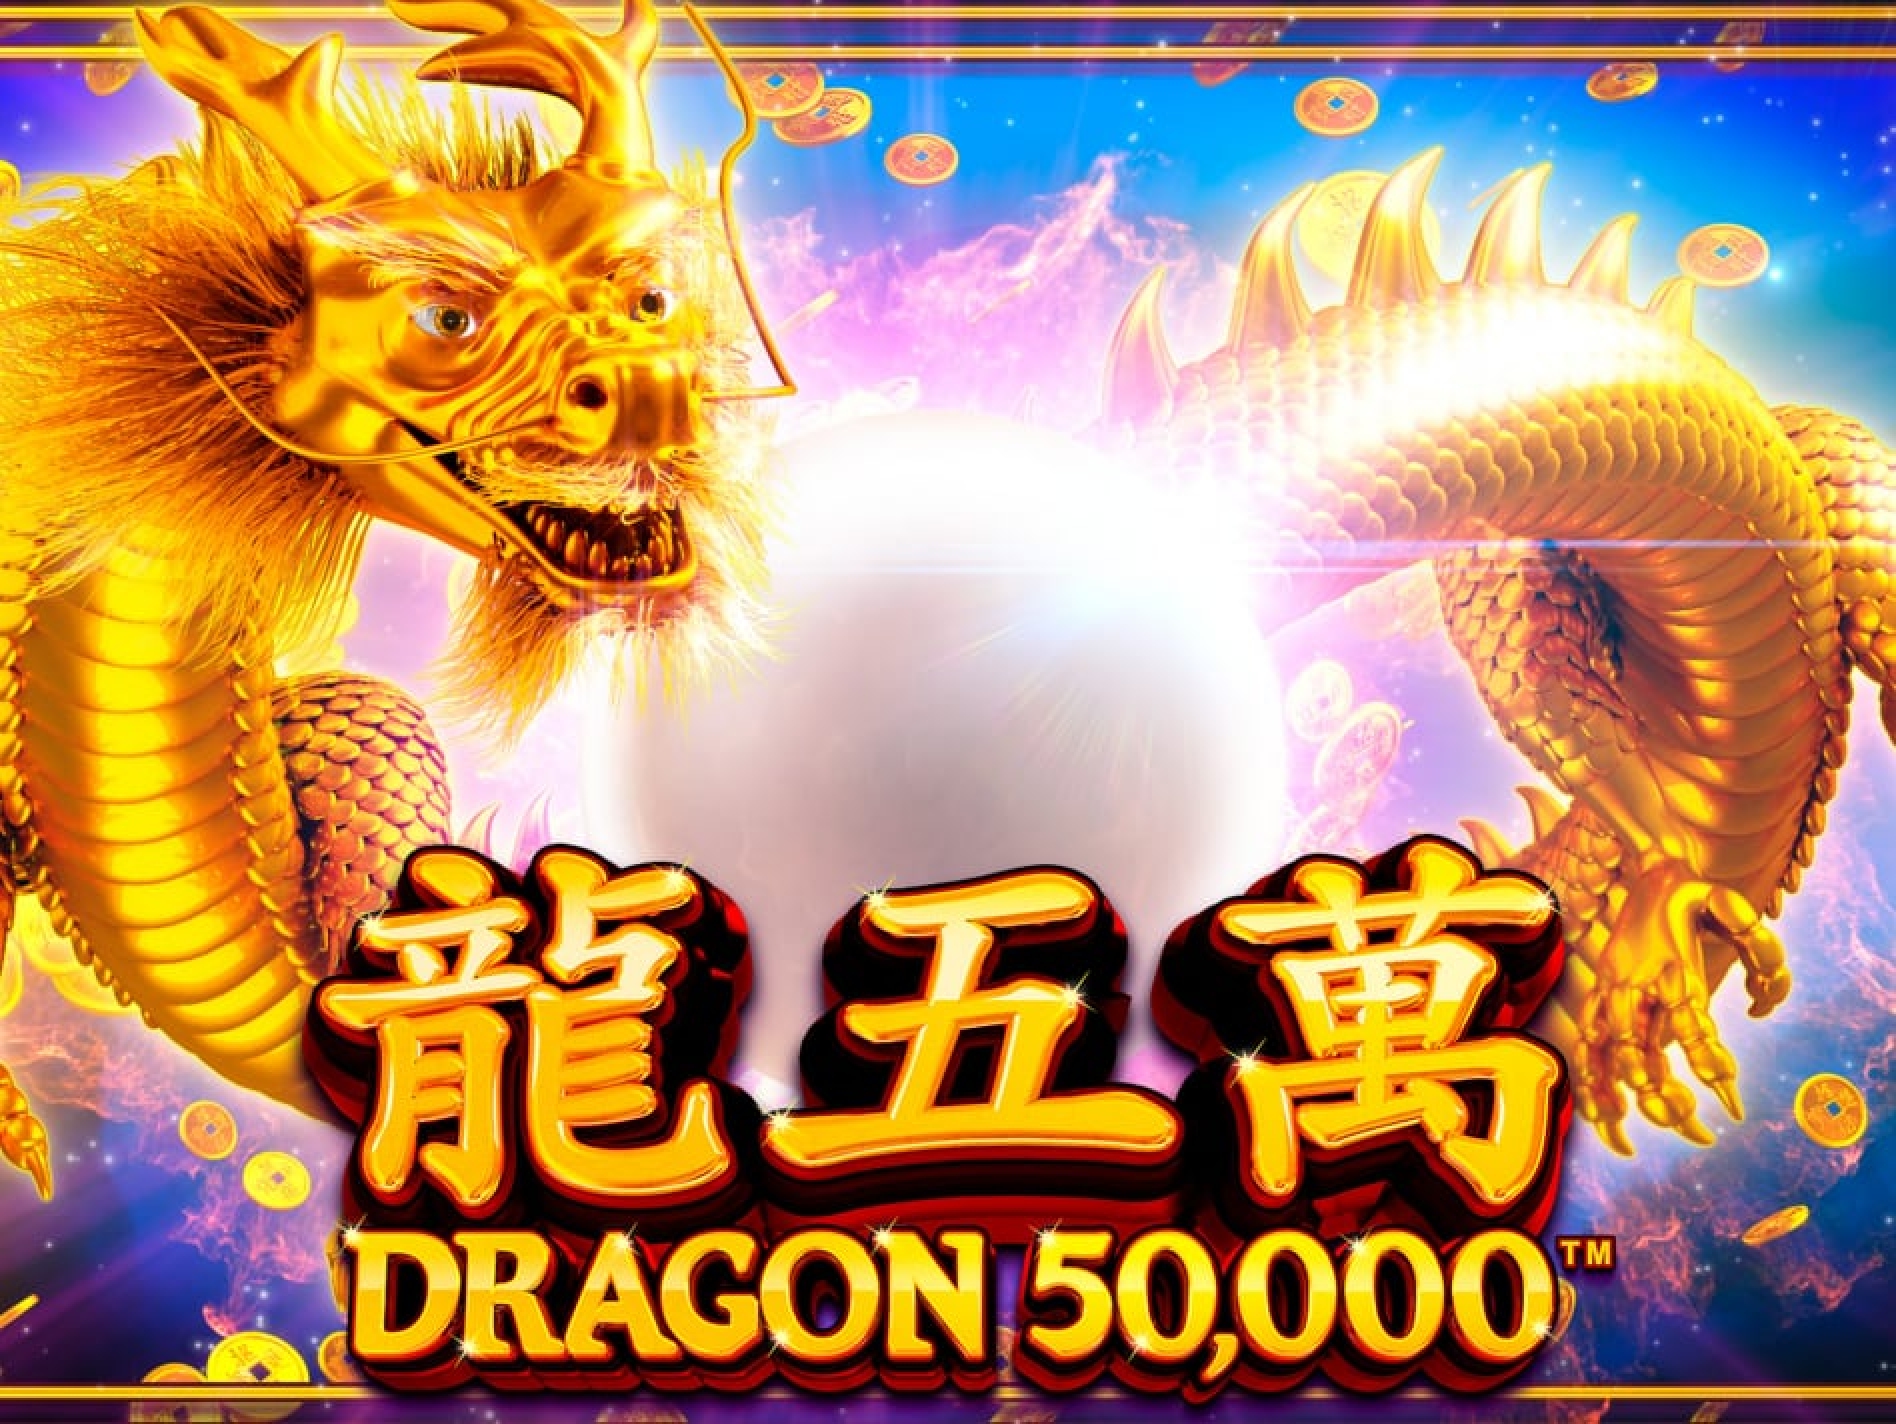 Dragon 50000 demo